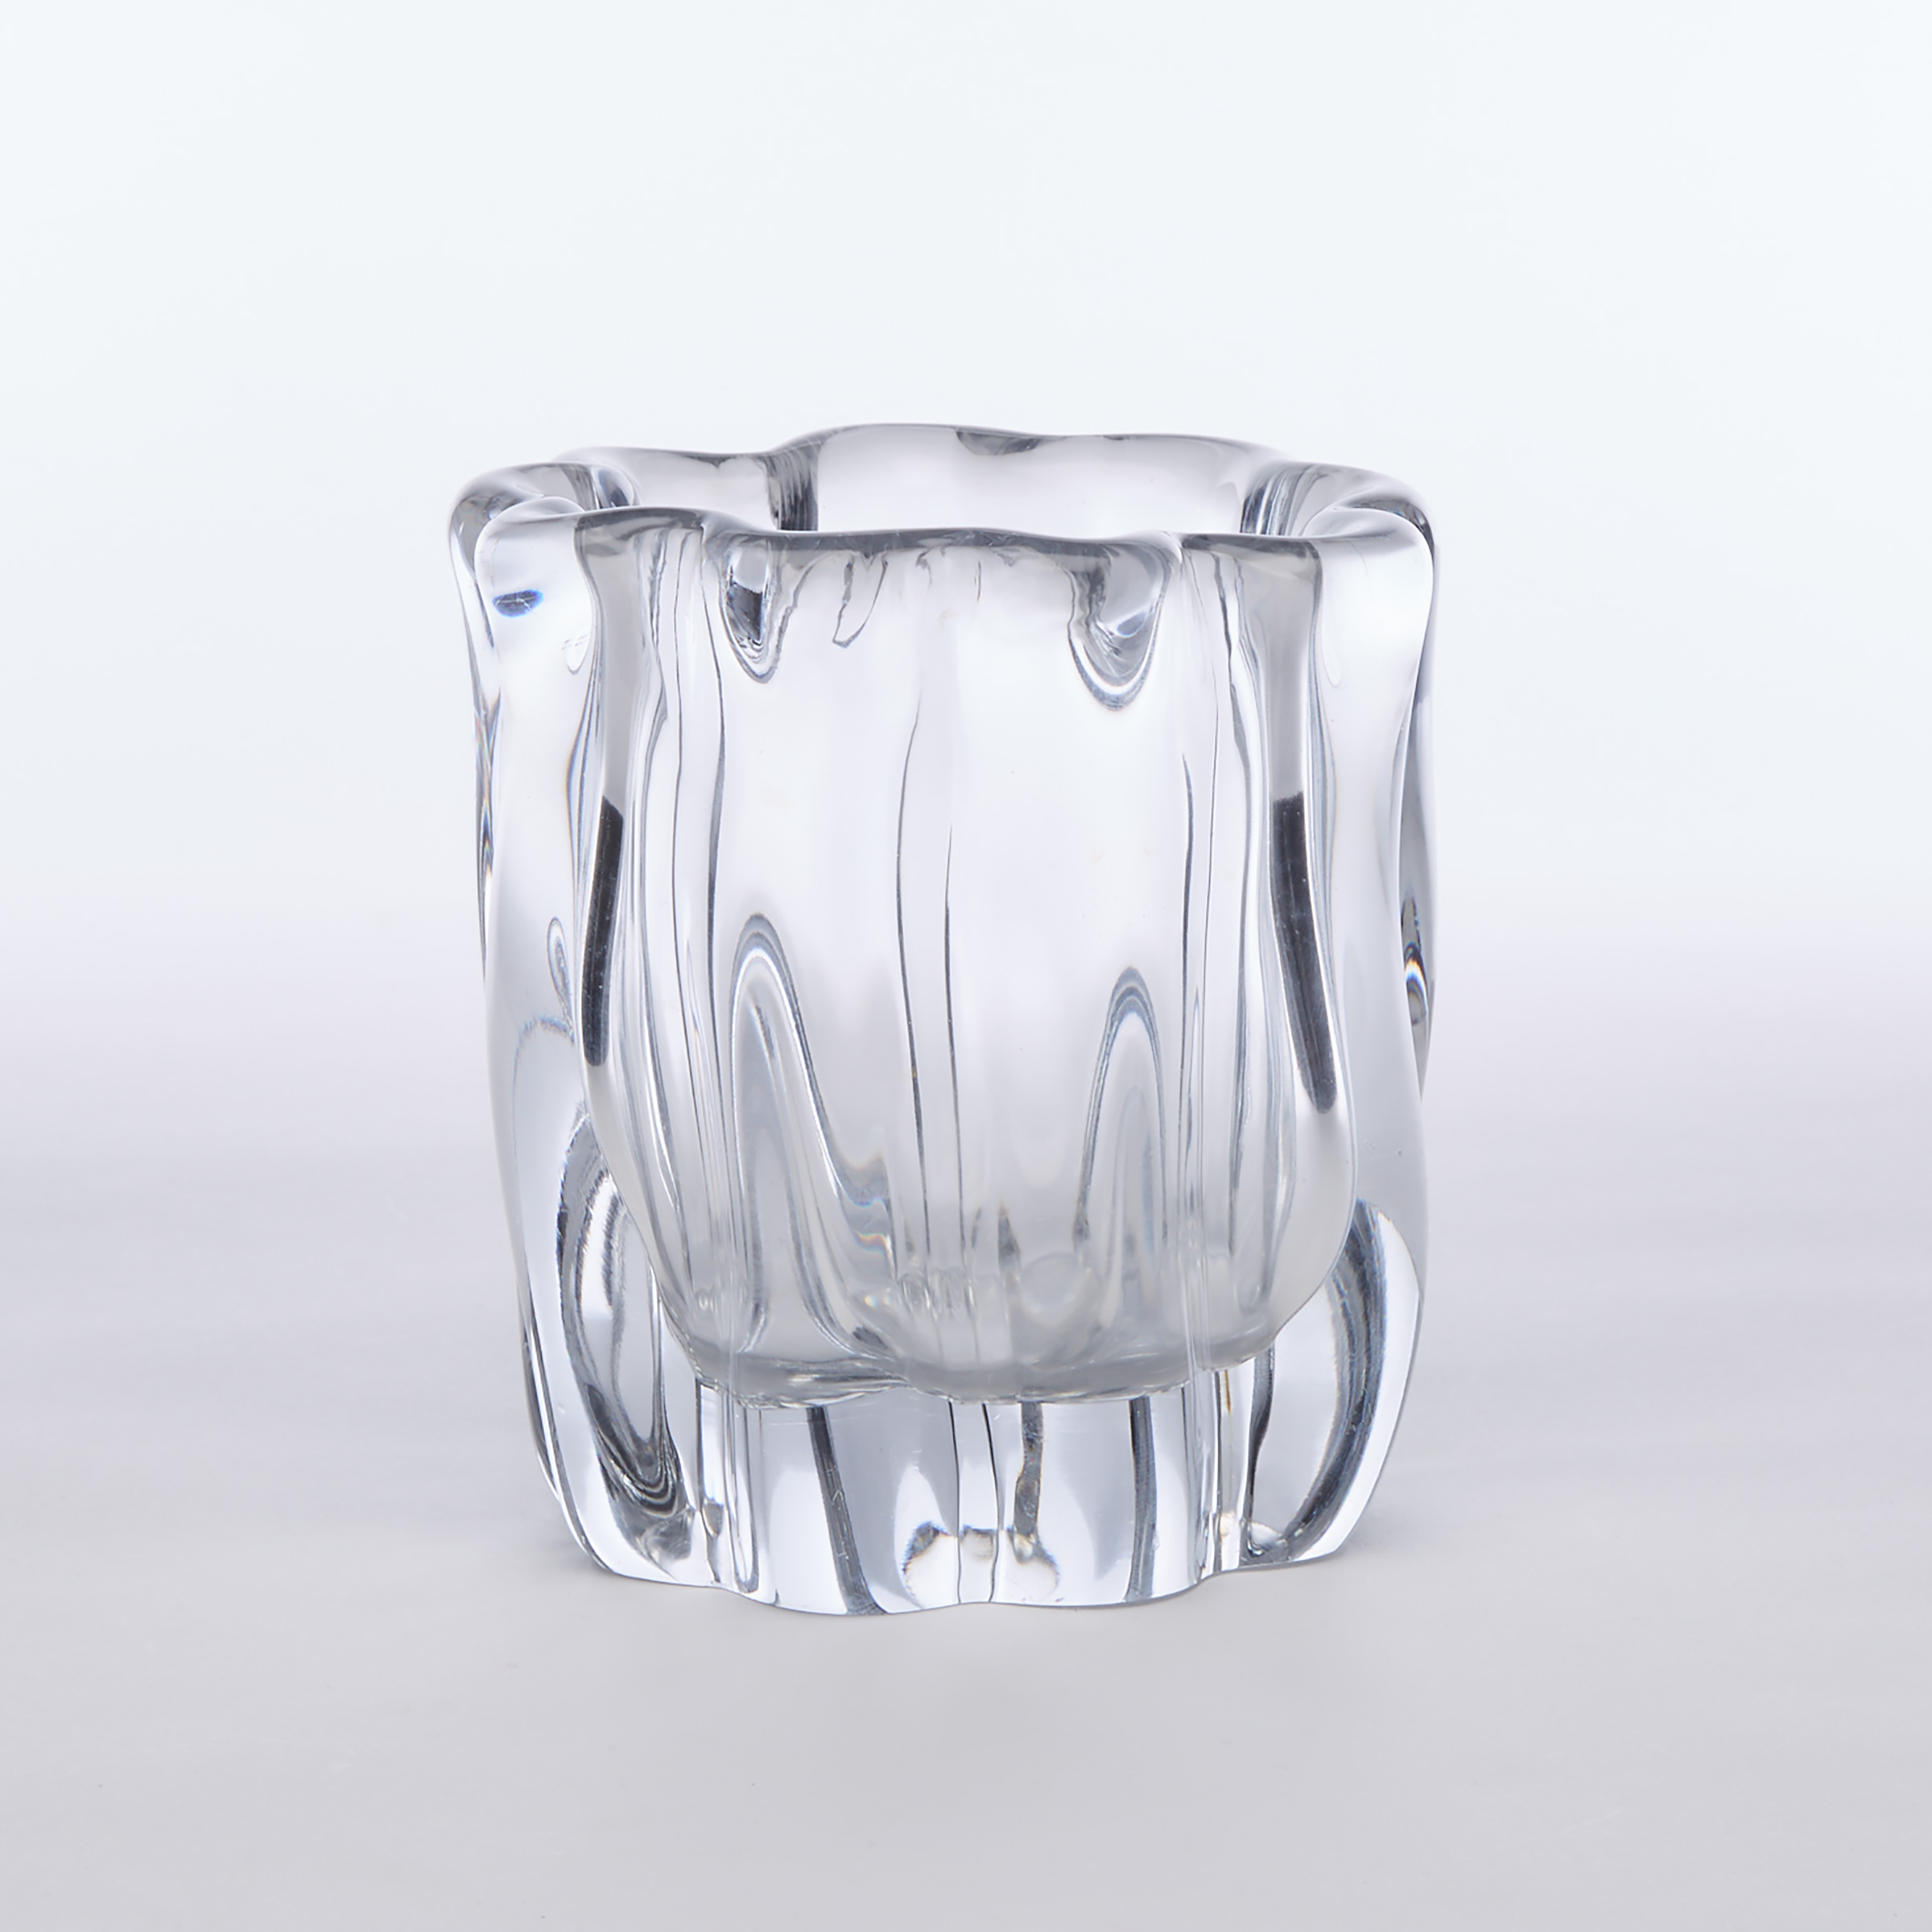 Tapio Wirkkala 'Kanto' Glass Vase, for Iittala, mid-20th century